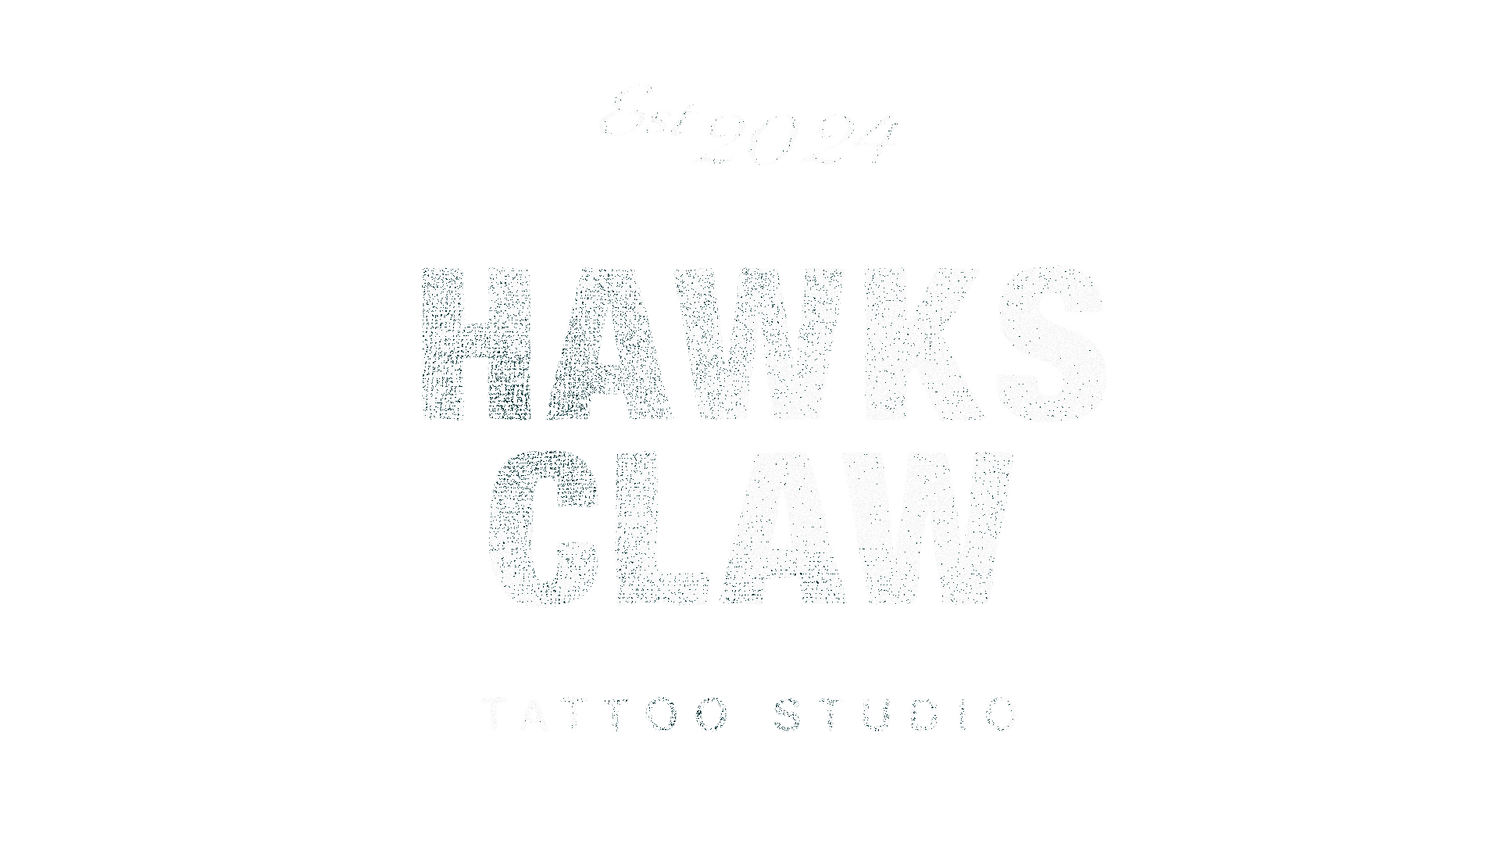 Hawks Claw